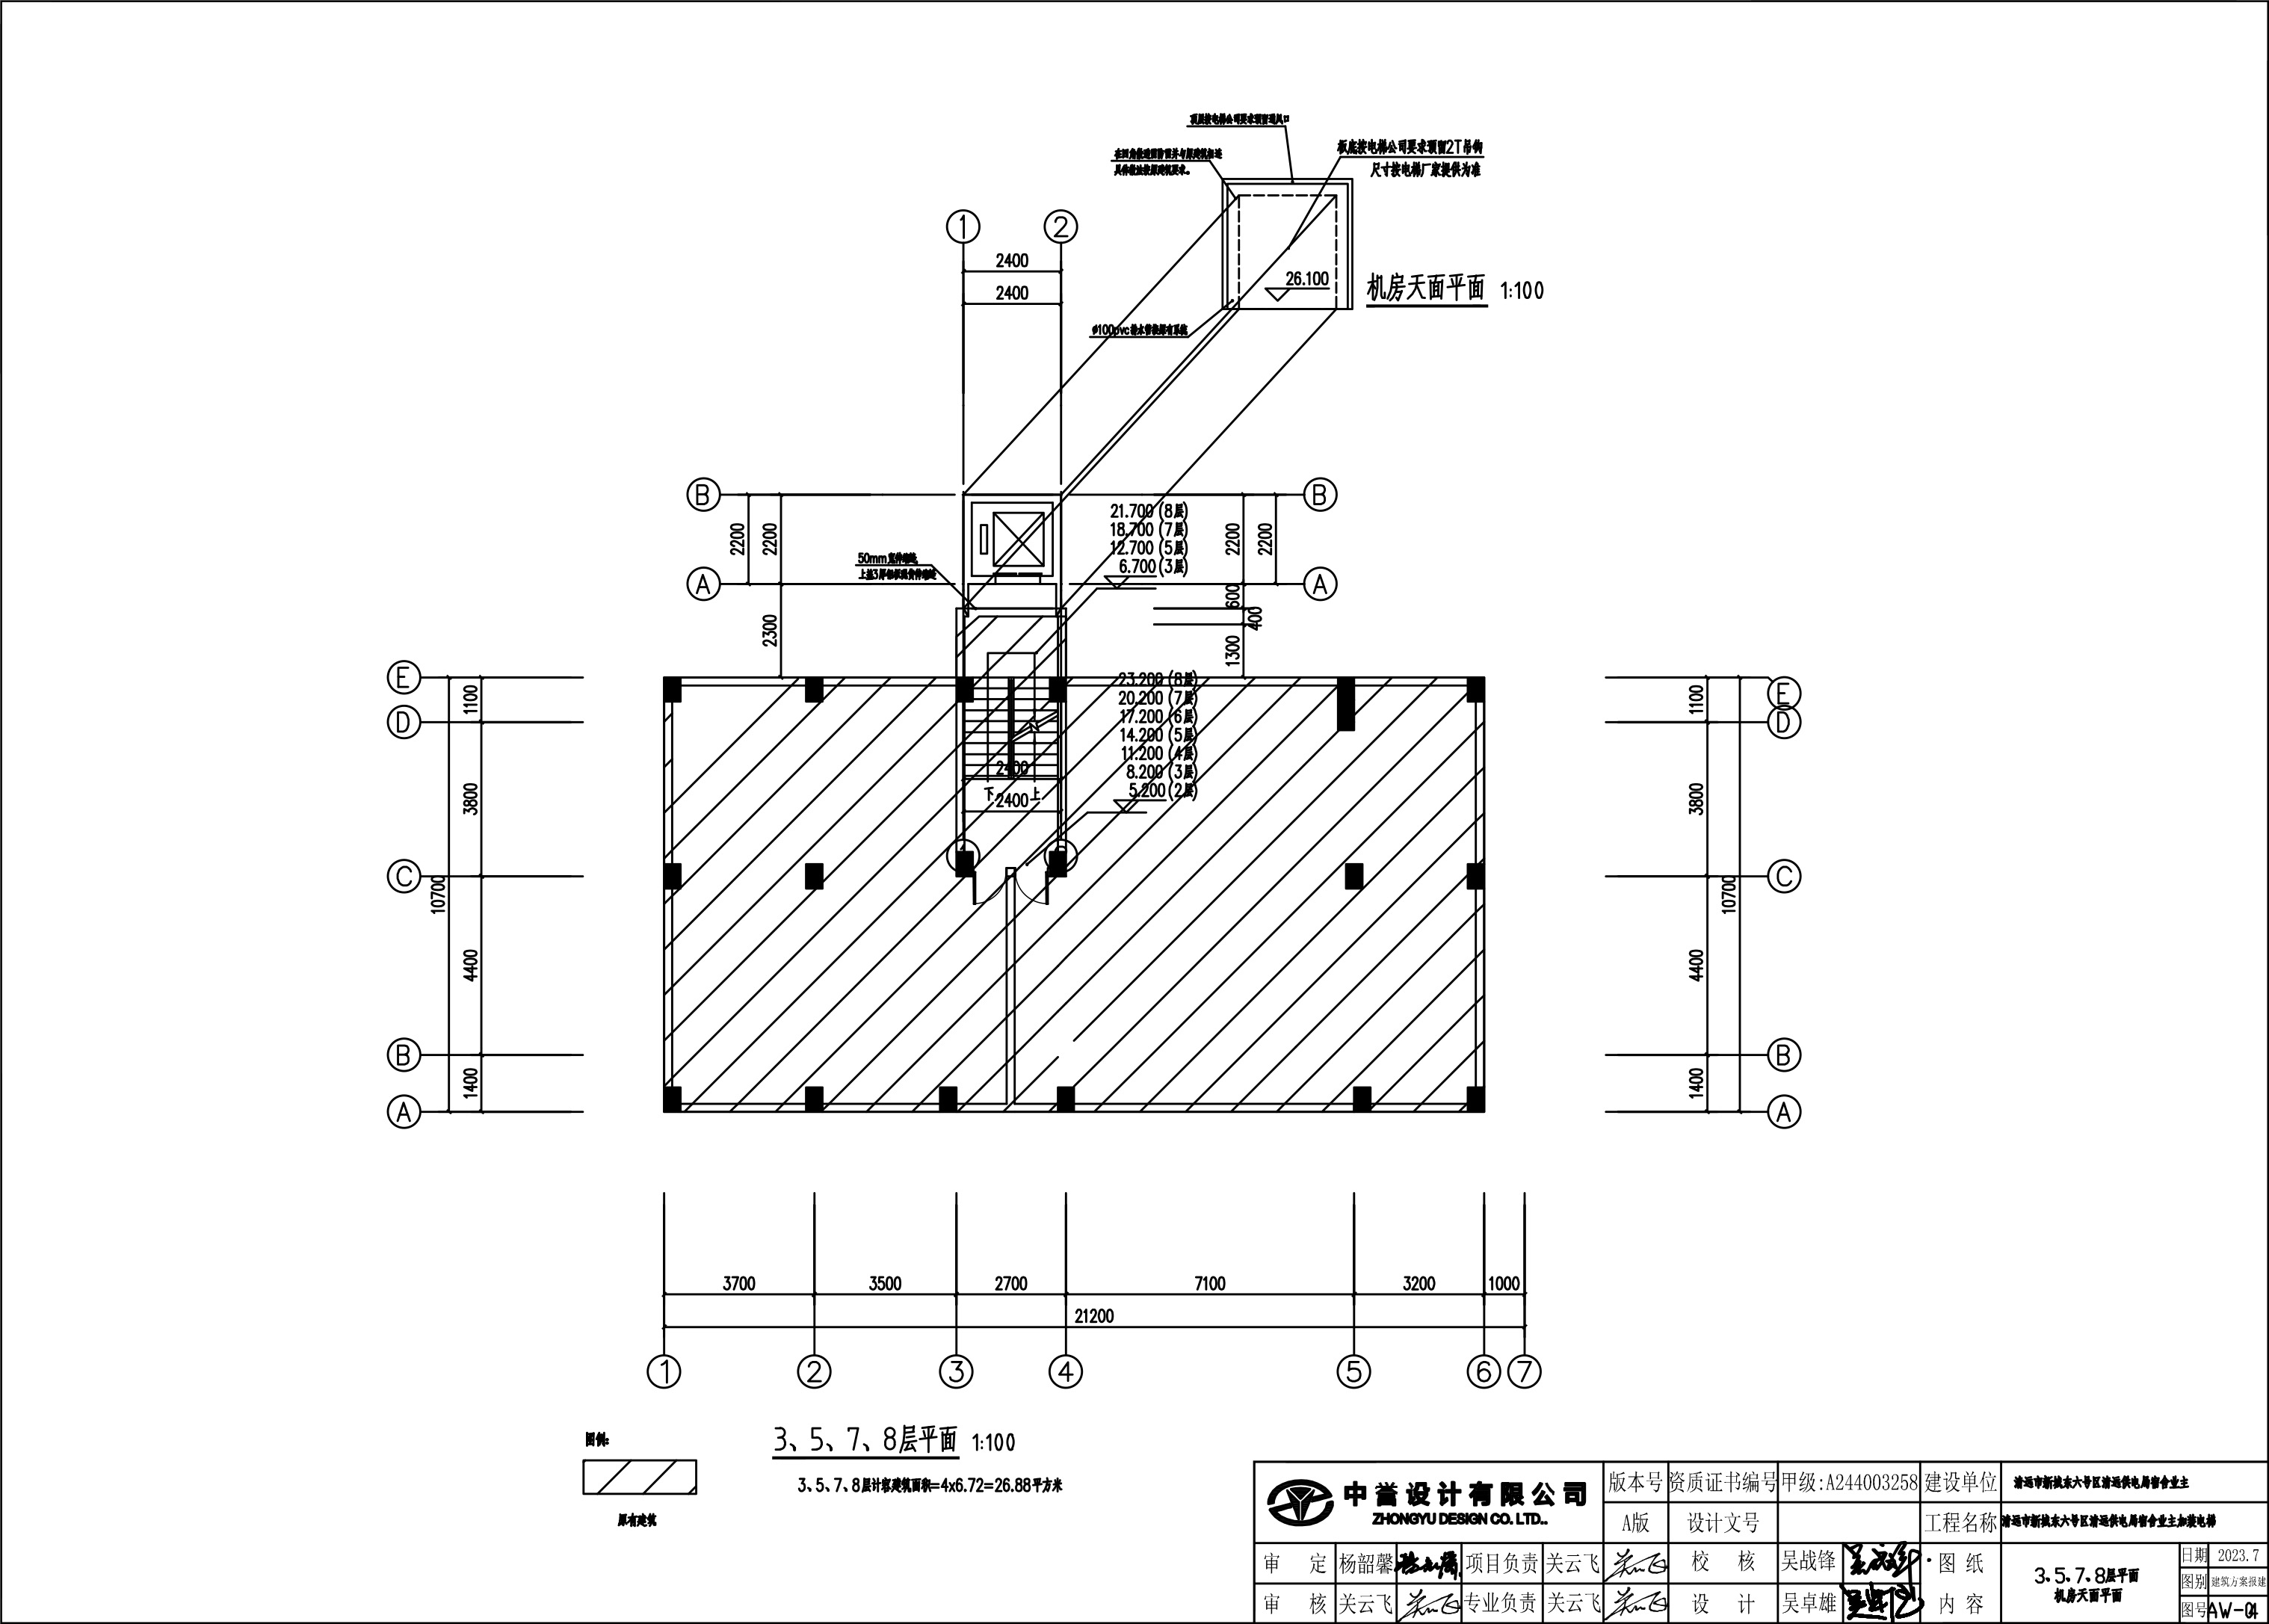 新城清远供电局宿舍电梯建筑图3-5-7-8层 .jpg